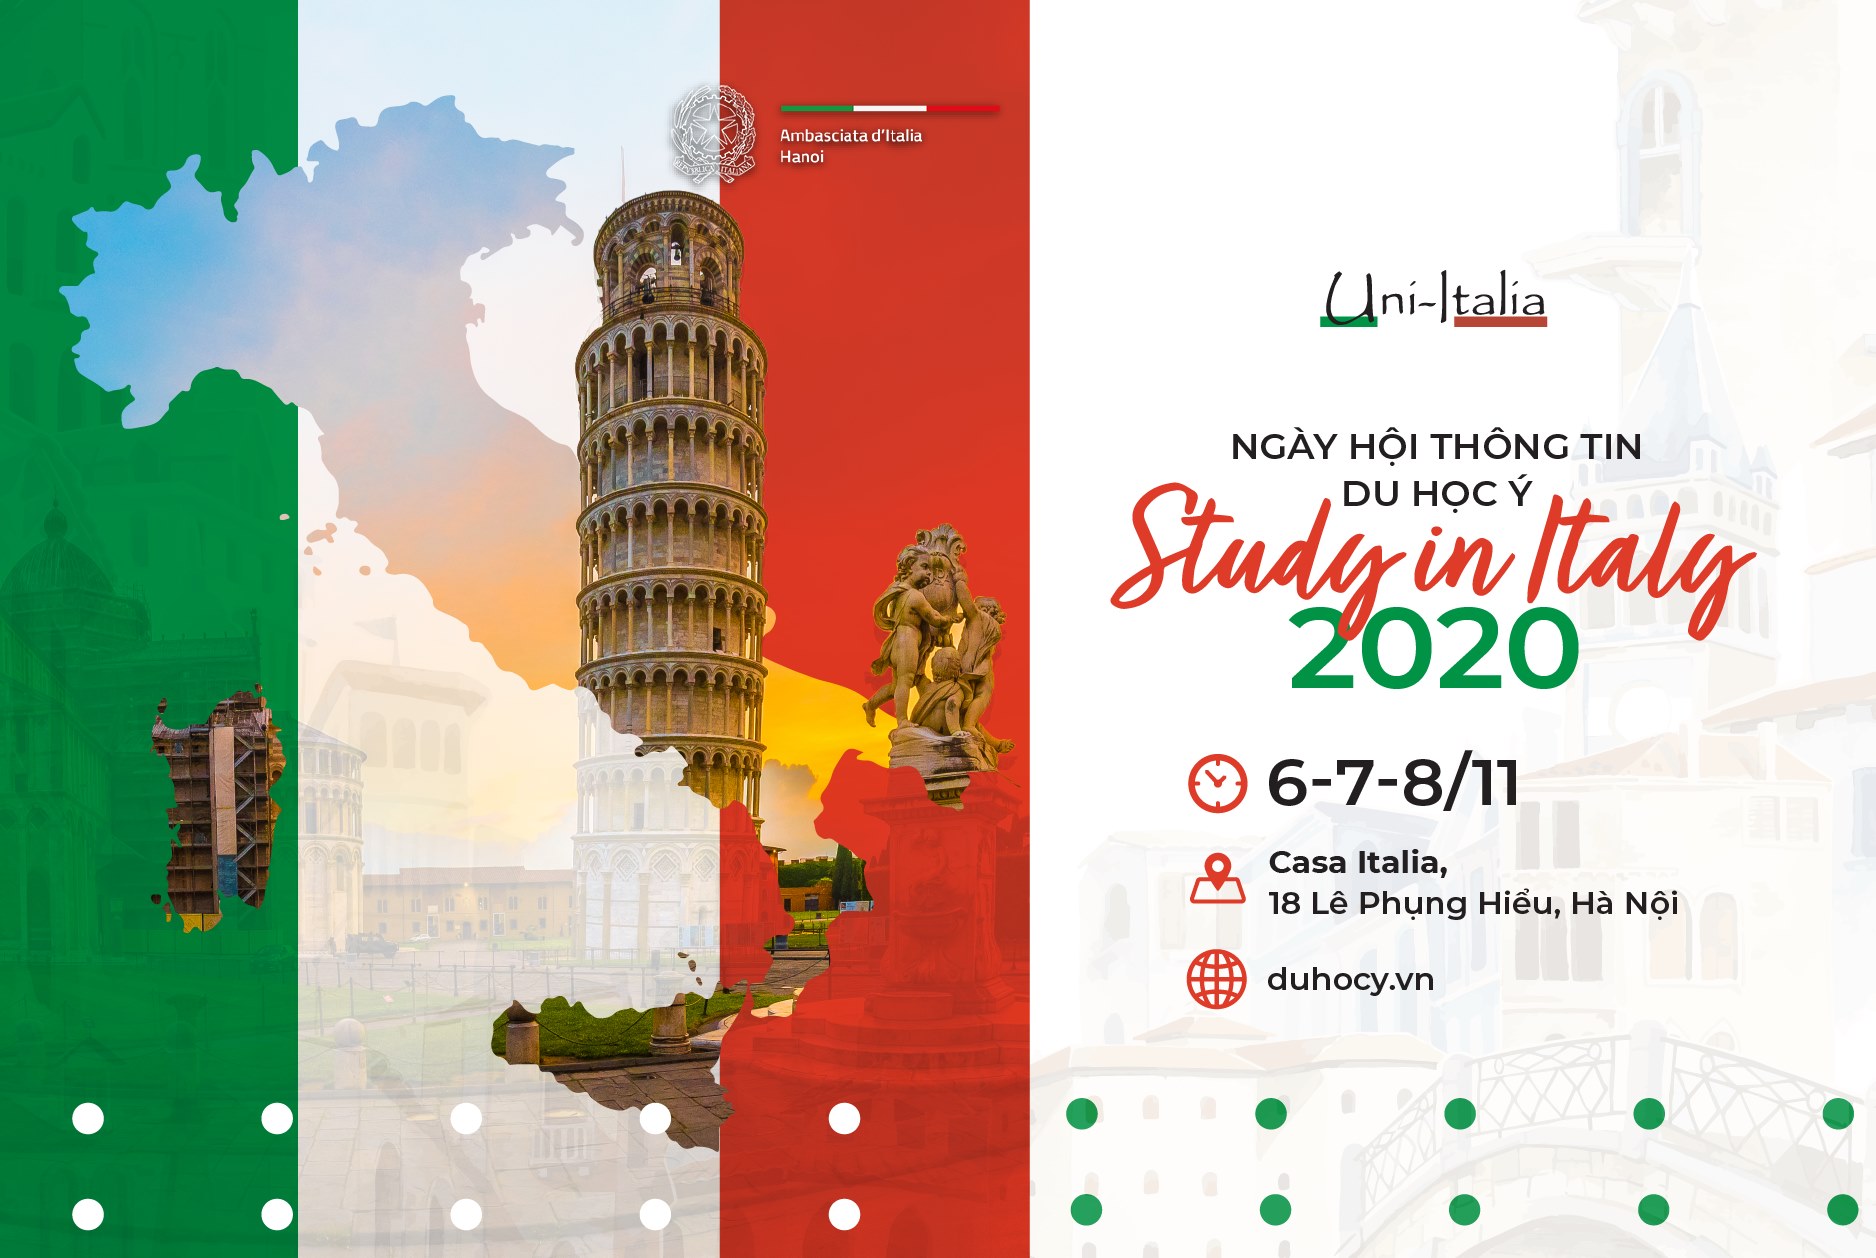 [HTQT] "Study in Italy 2020” - Ngày hội thông tin du học Ý